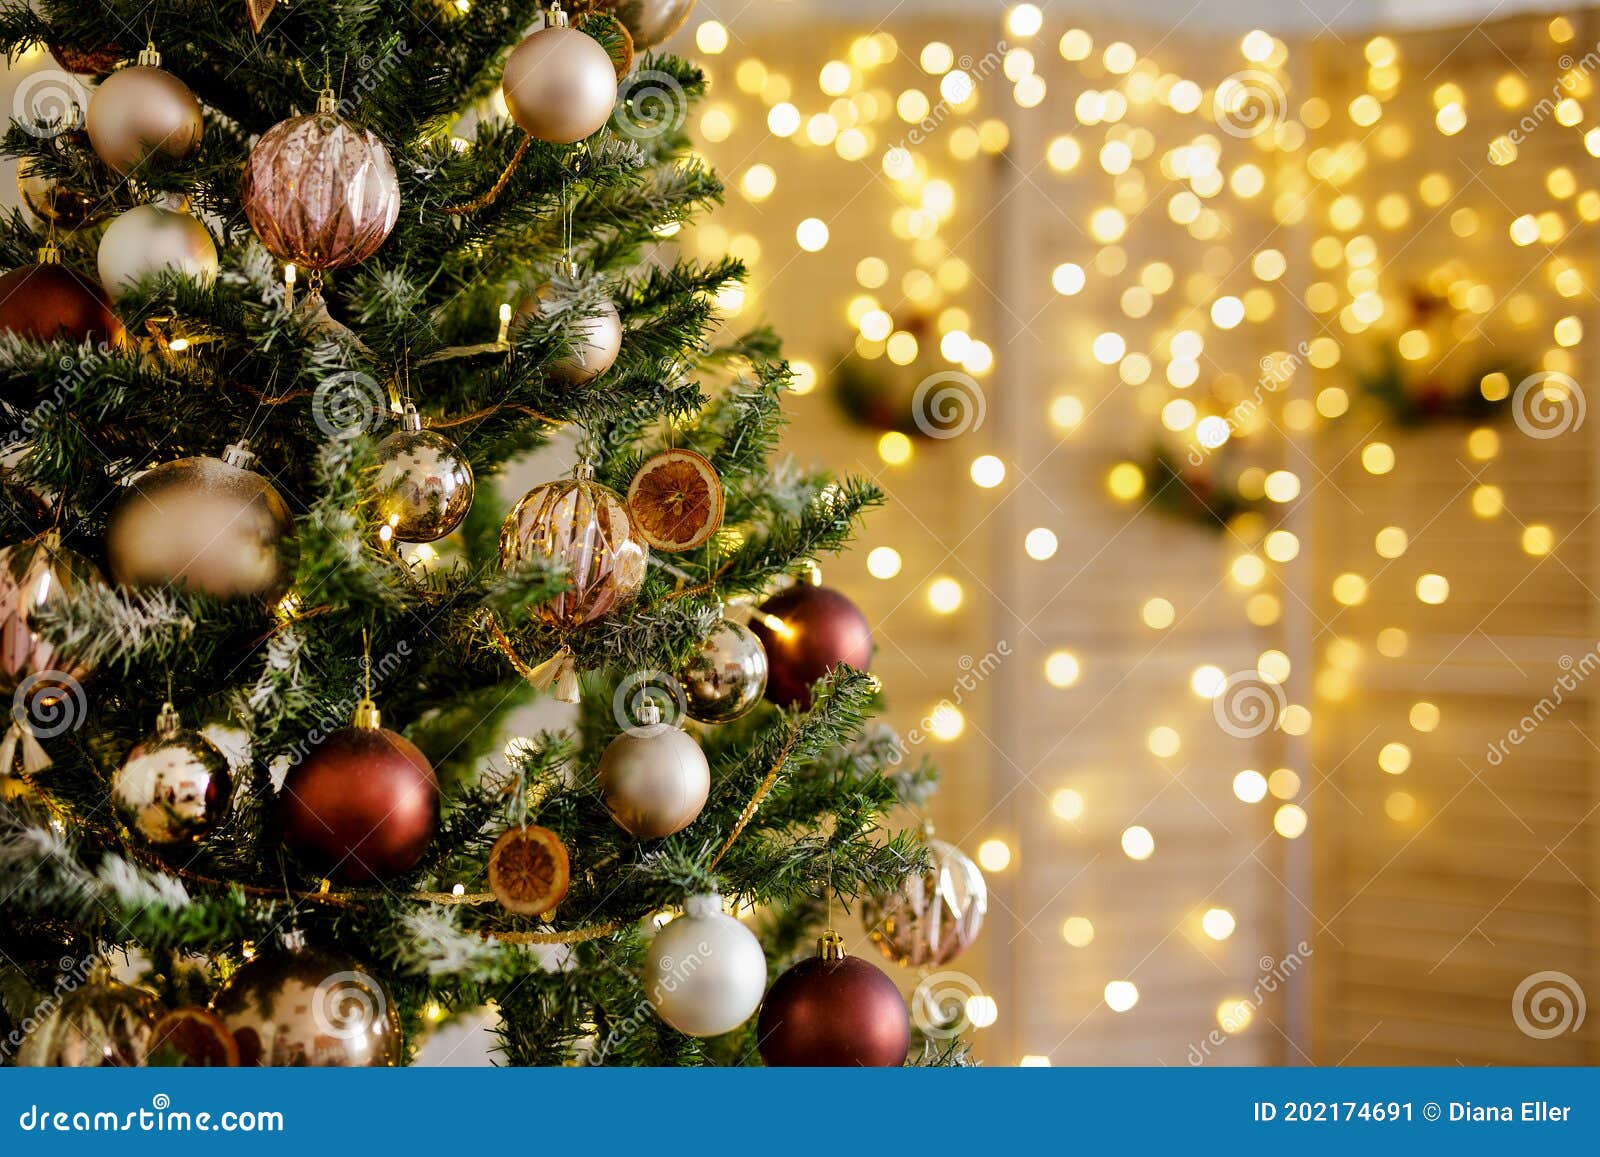 Interesante atómico muy agradable Cierre Del árbol De Navidad Decorado Y Pantalla Plegable Con Luces Led  Imagen de archivo - Imagen de casa, iluminado: 202174691